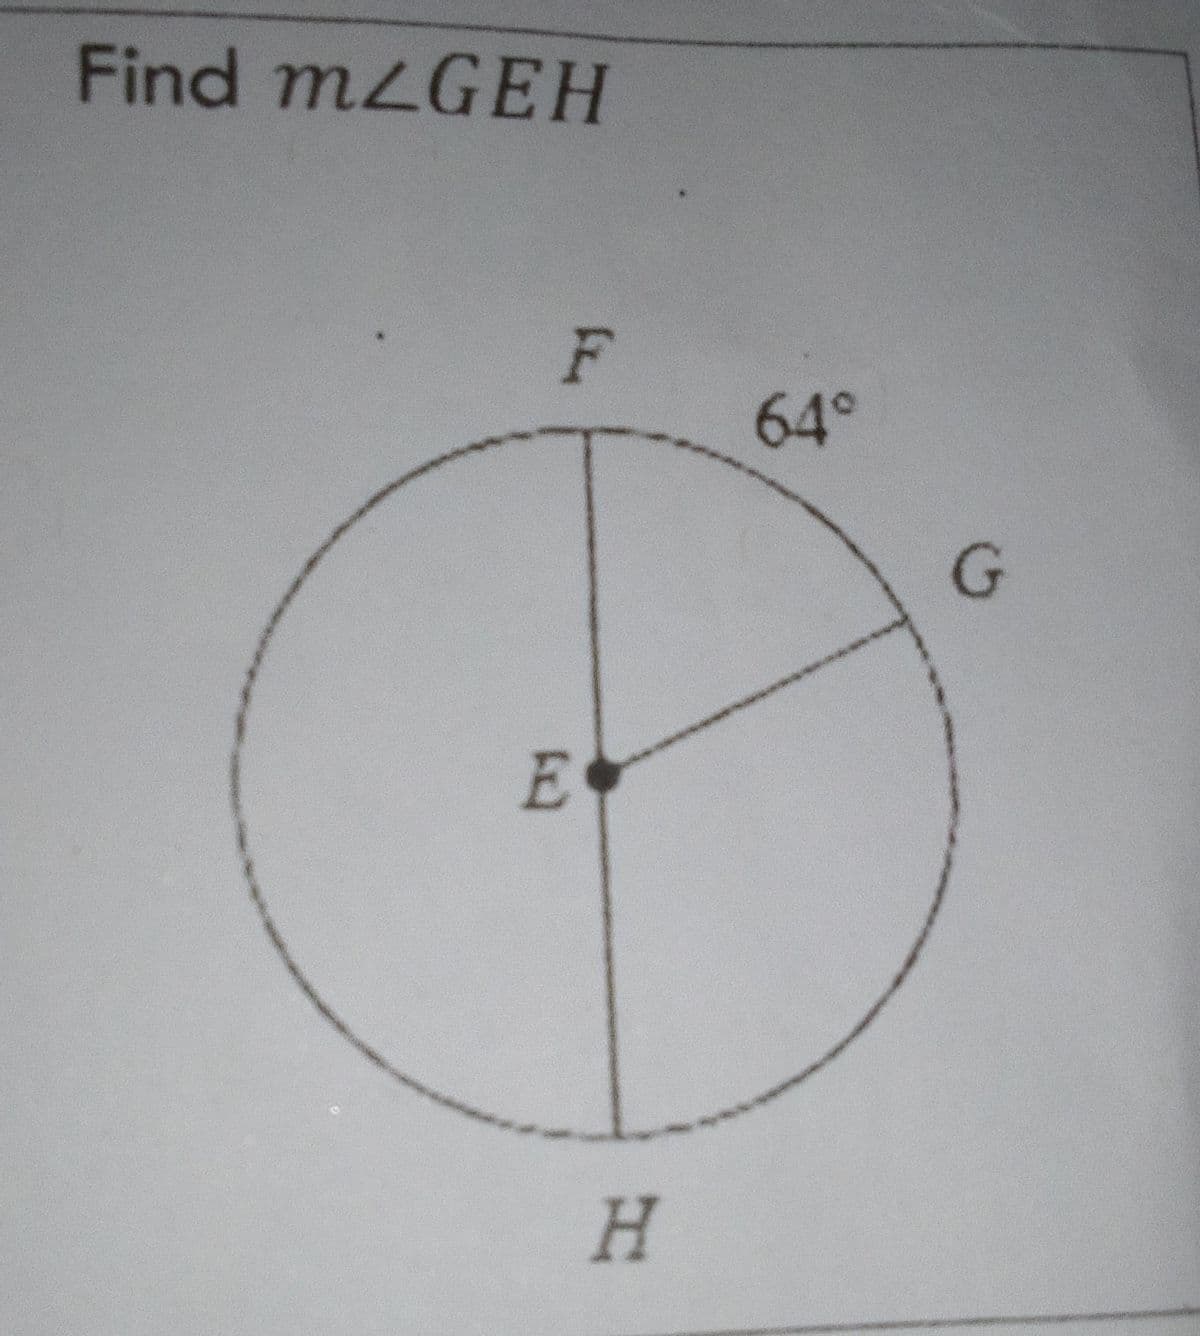 Find mLGEH
F
64°
H.
